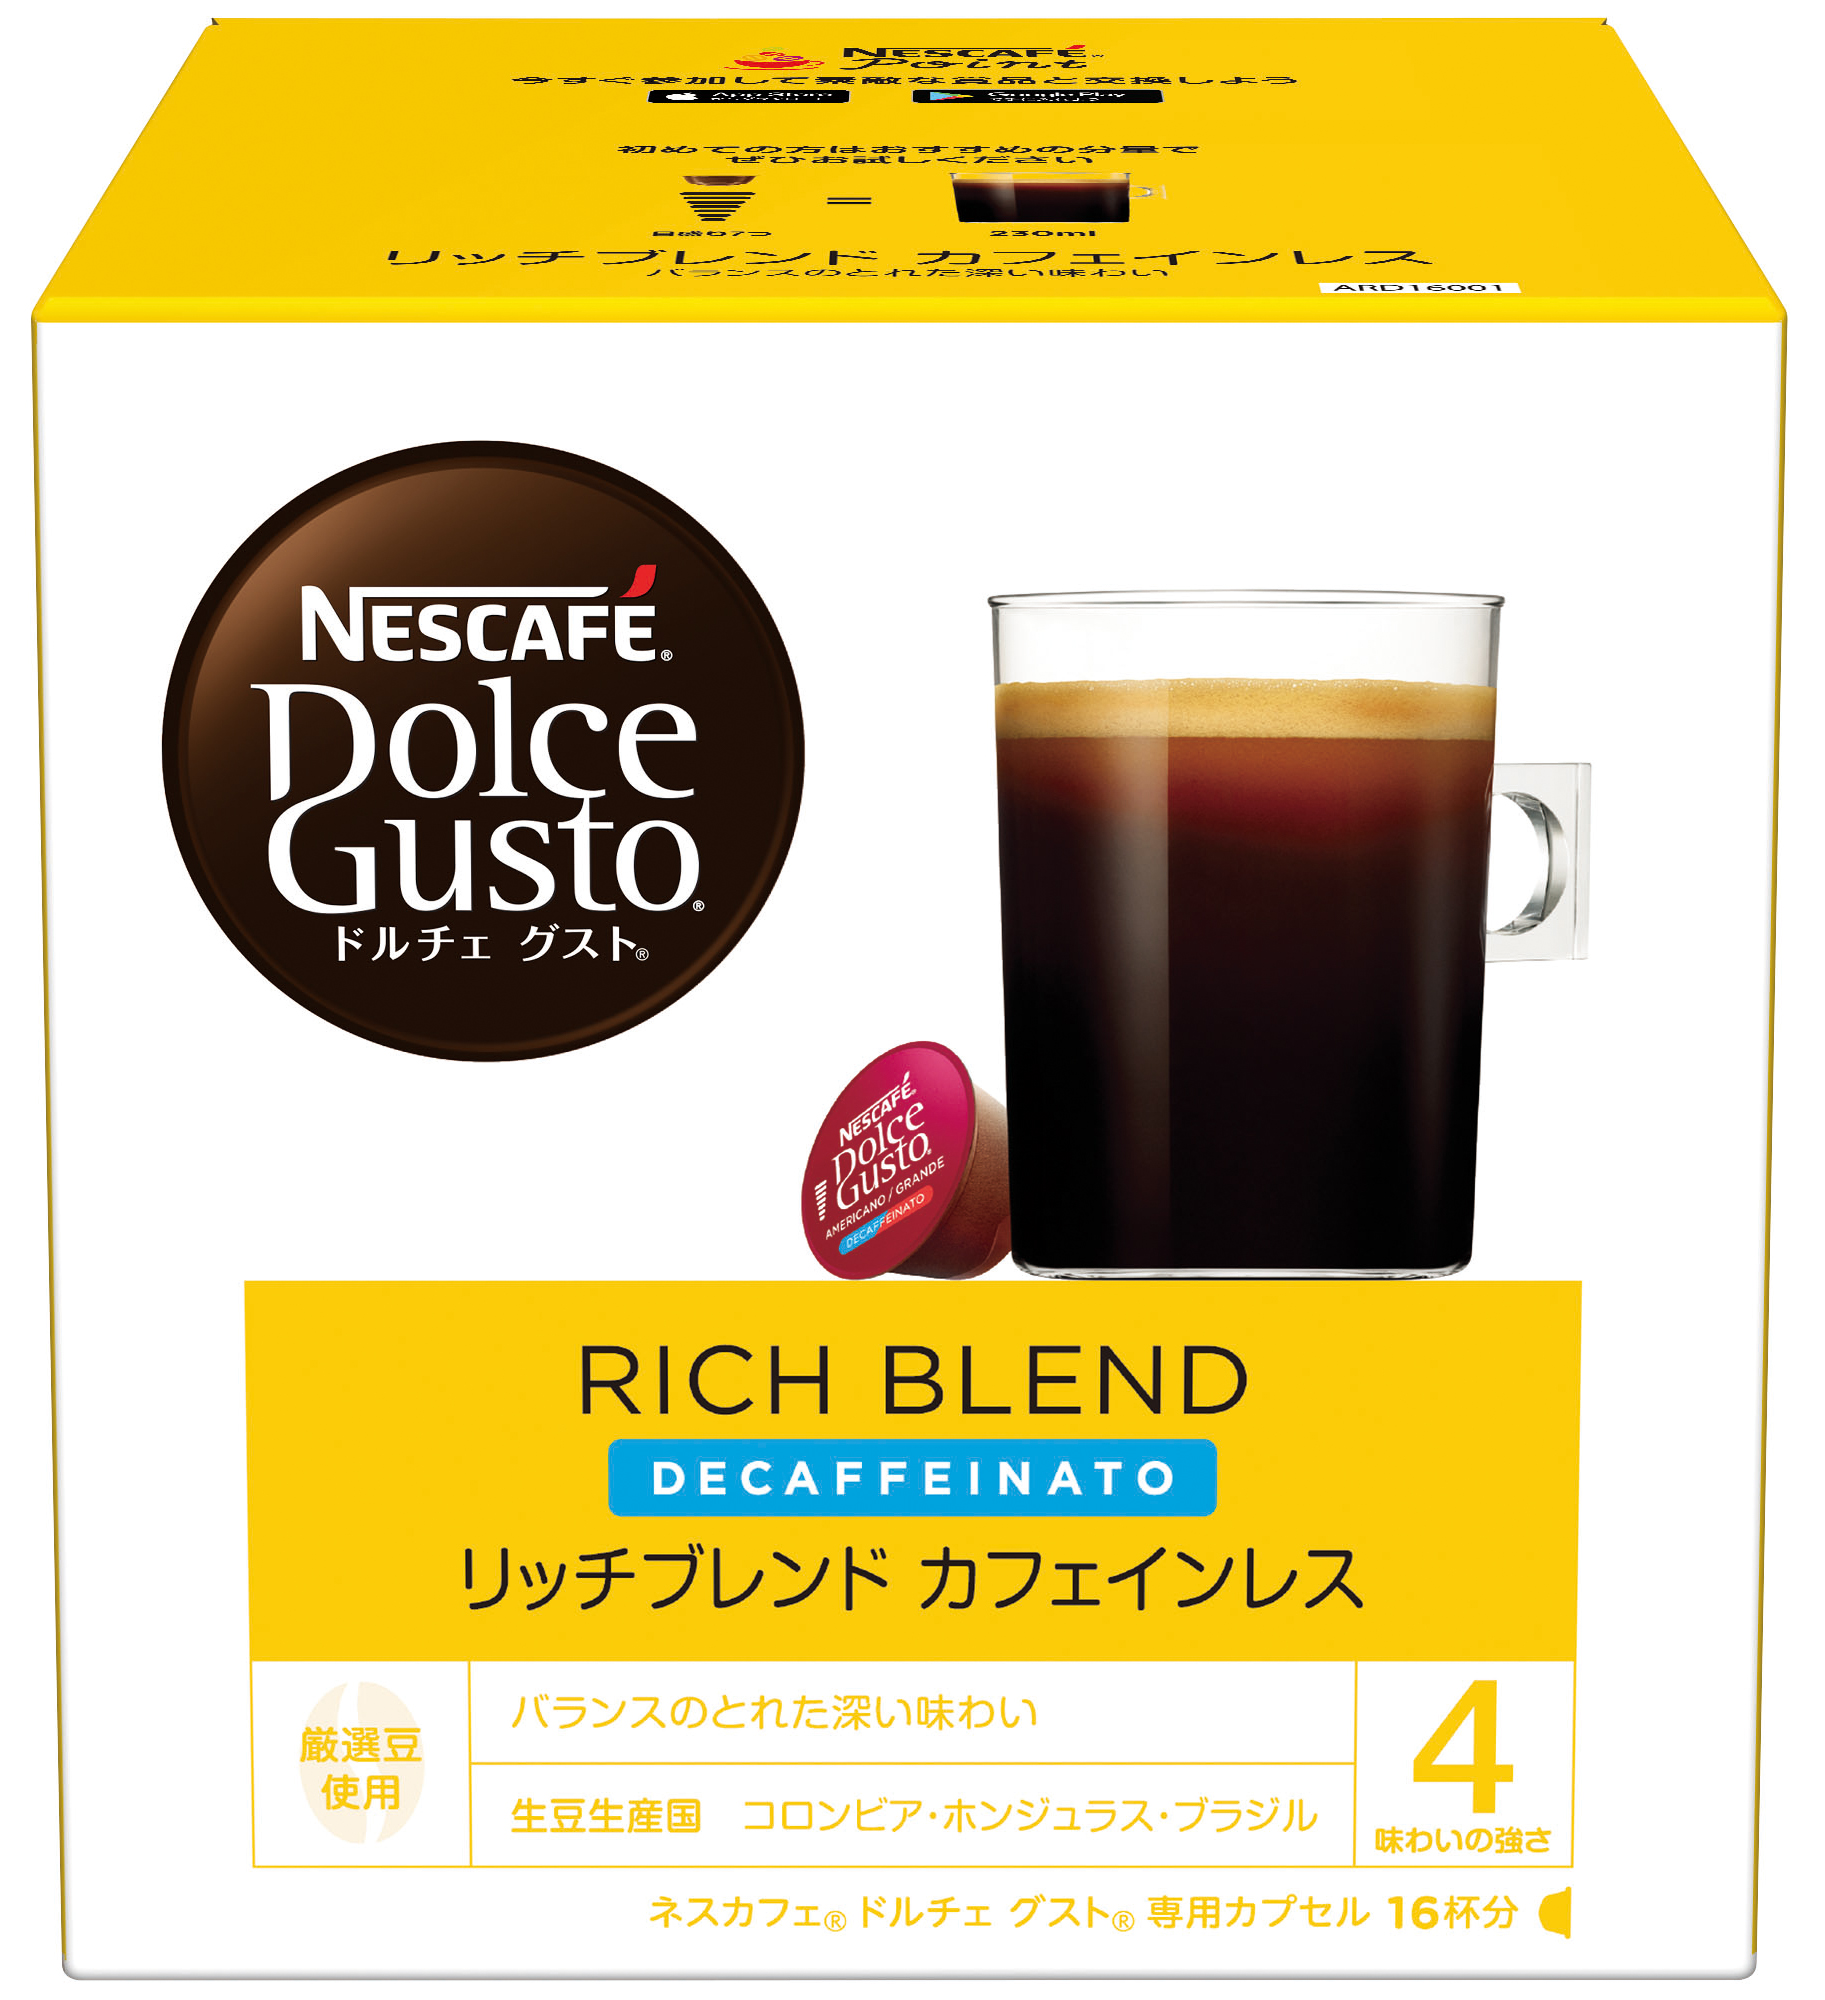 Nestle コーヒーカプセル ネスカフェ ドルチェグスト専用カプセル レギュラーブレンド カフェインレス 16杯分×3箱